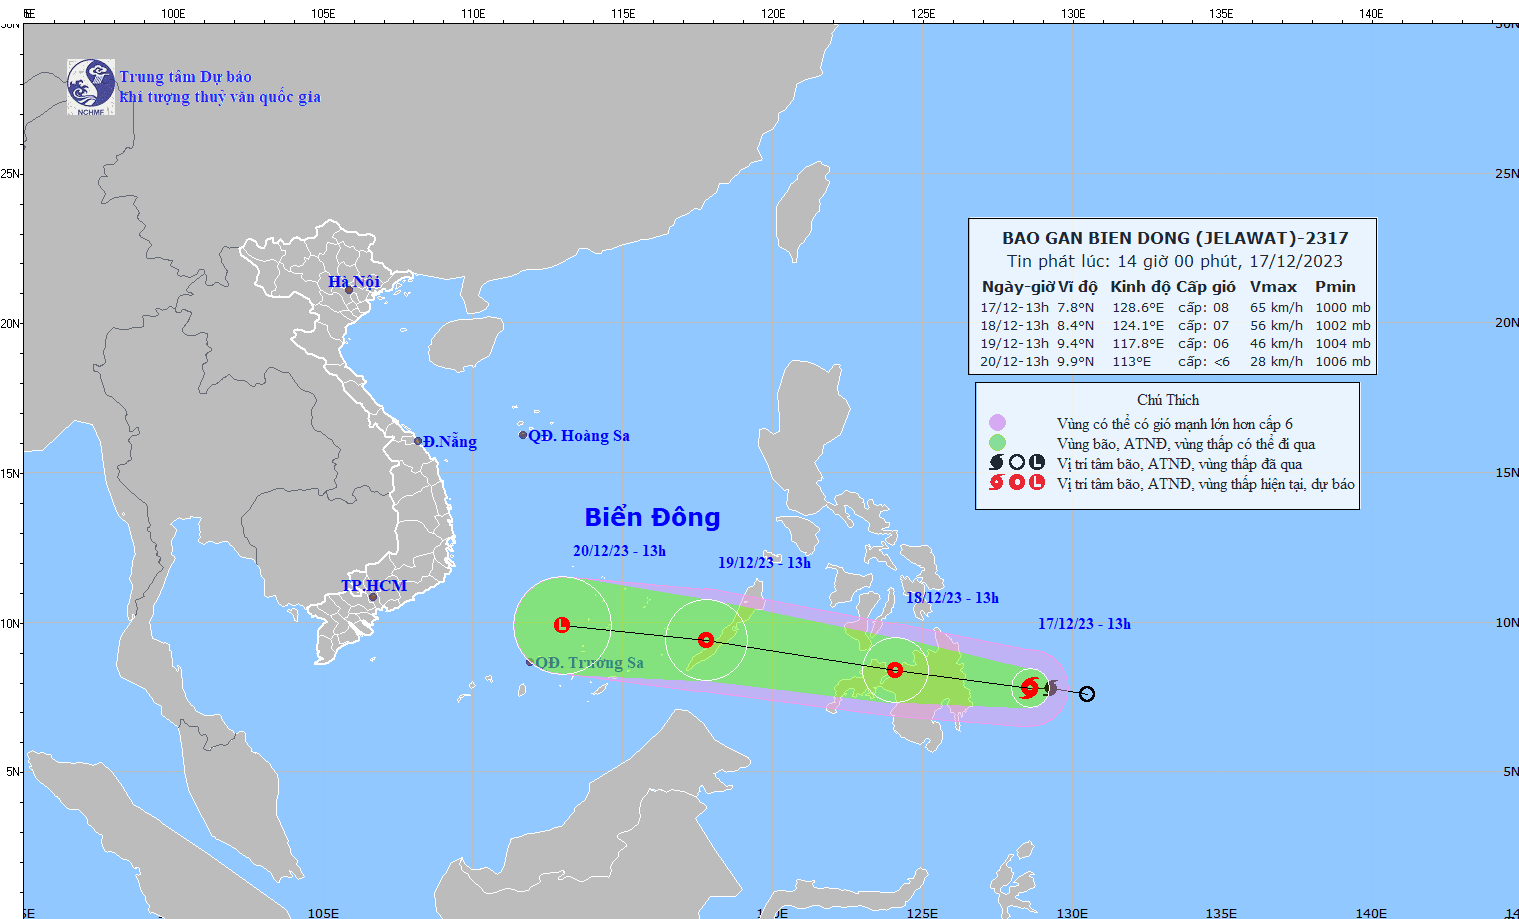 Các tỉnh, thành ven biển từ Quảng Bình đến Kiên Giang chủ động ứng phó với bão gần Biển Đông